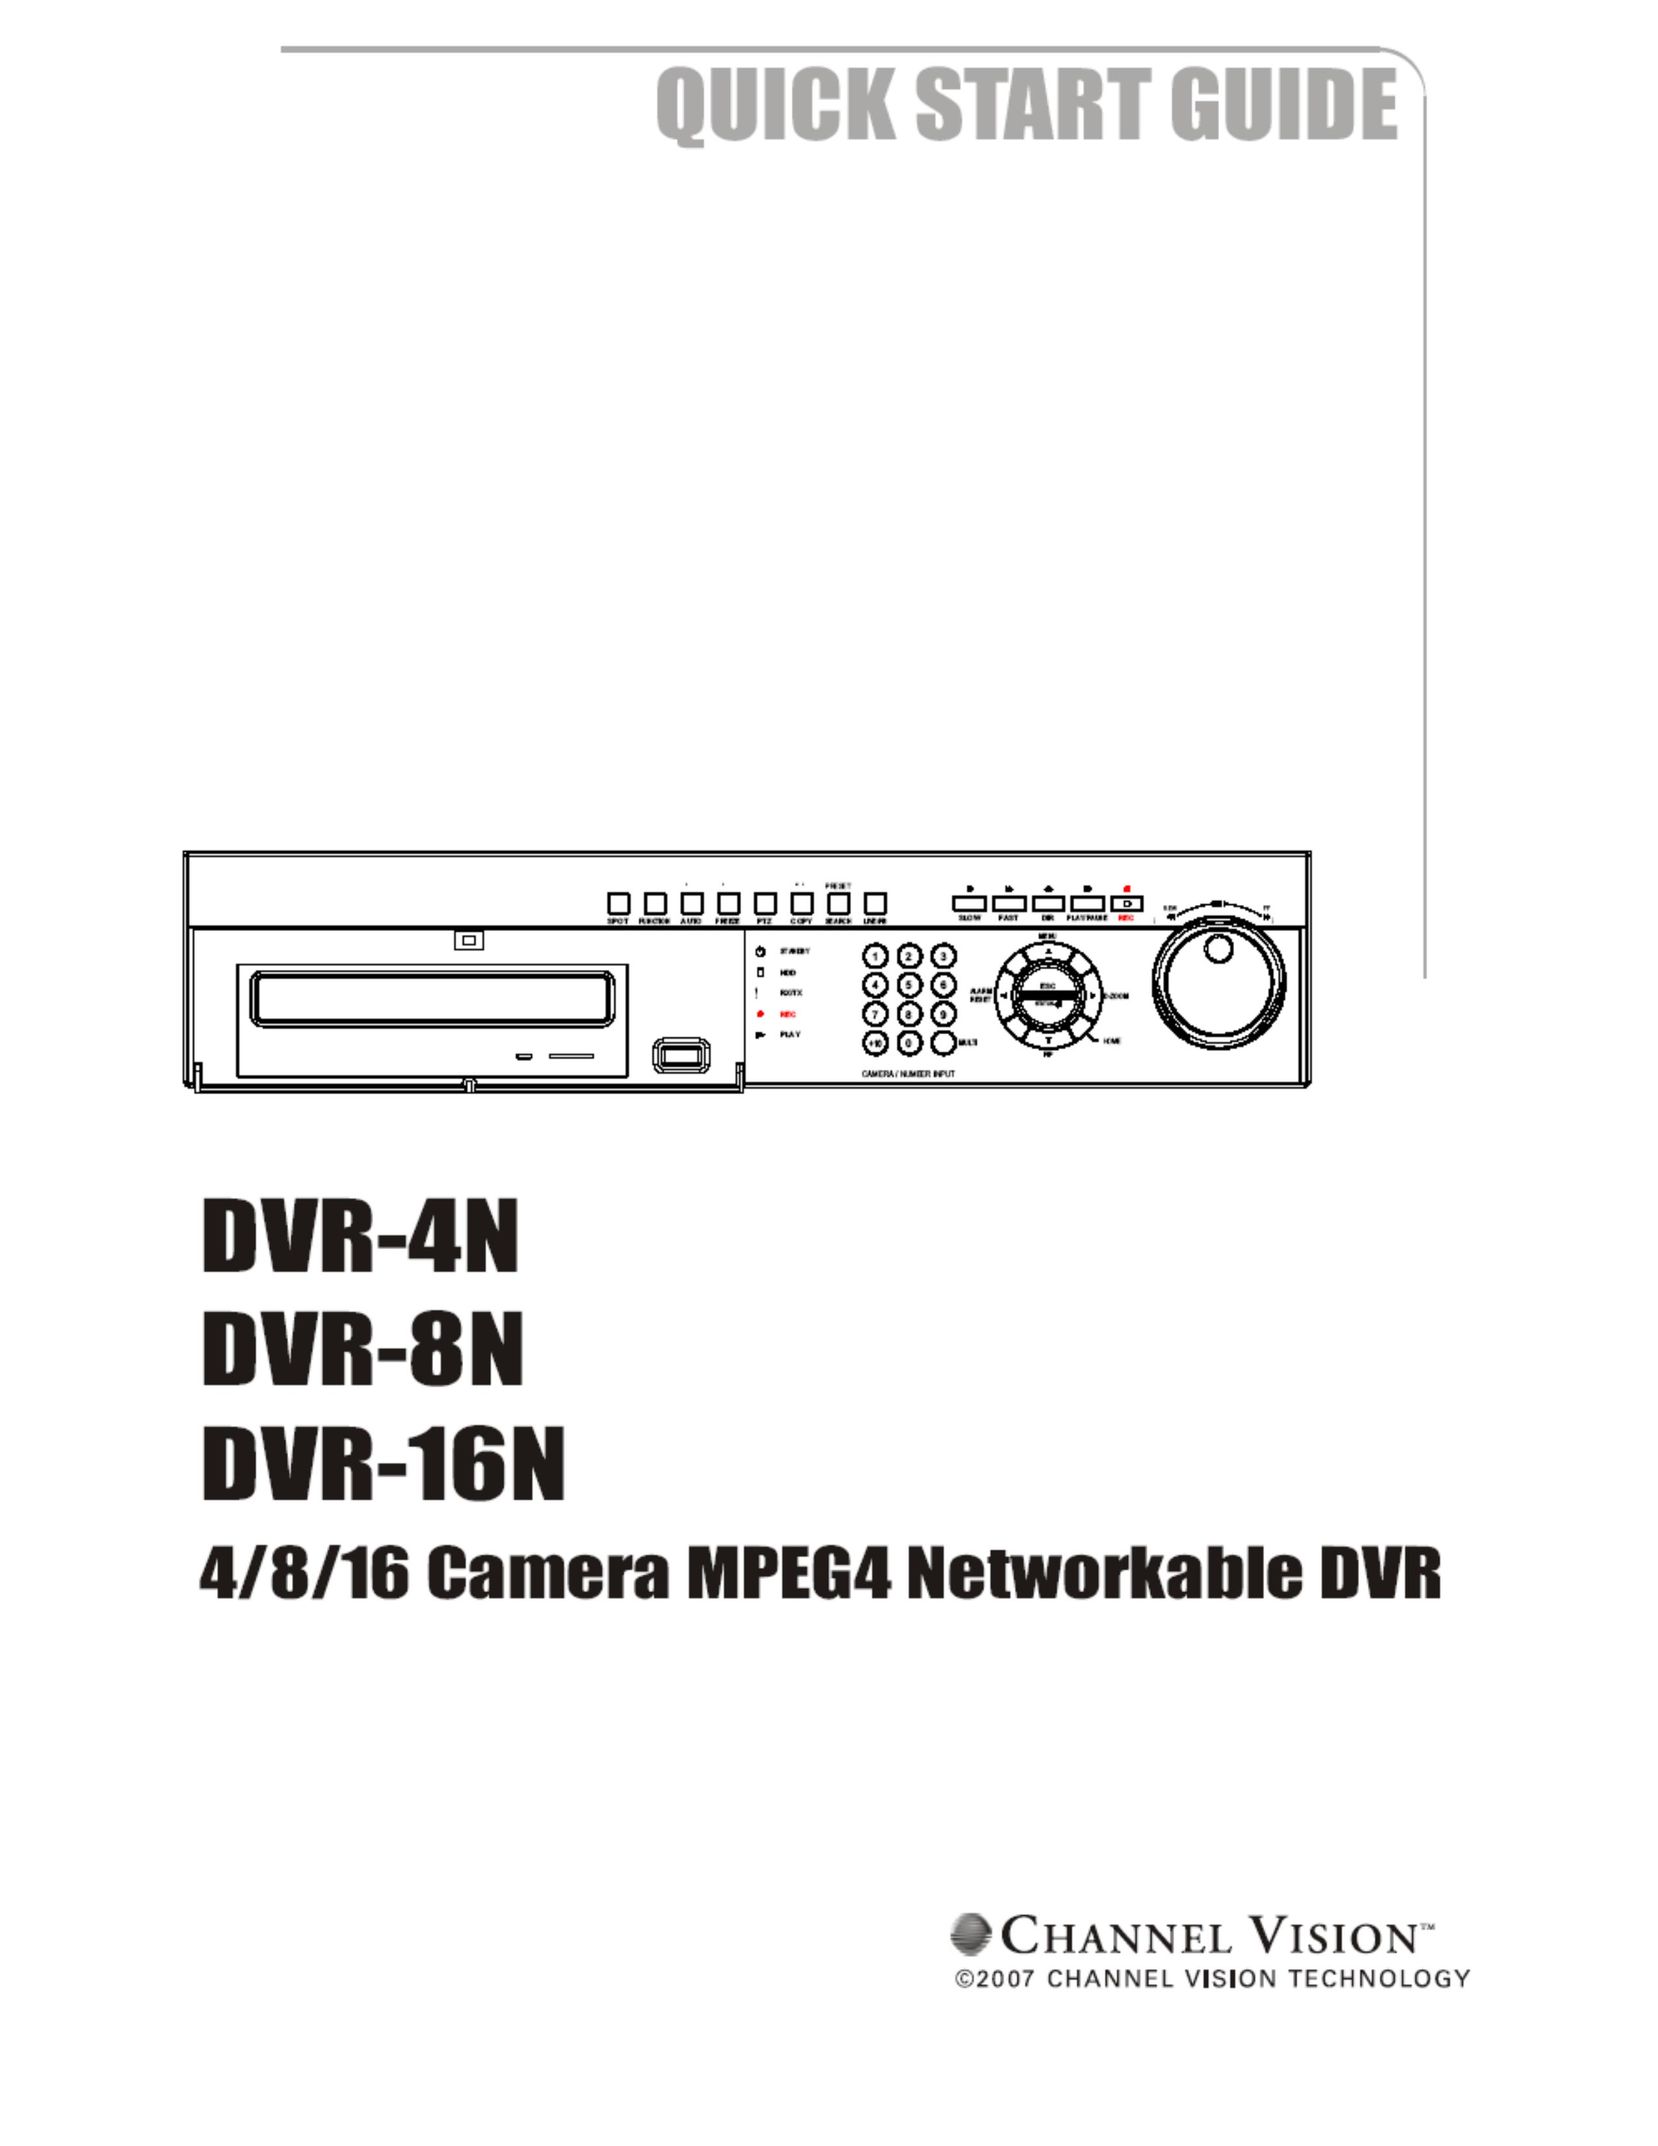 Channel Vision DVR-N DVR User Manual